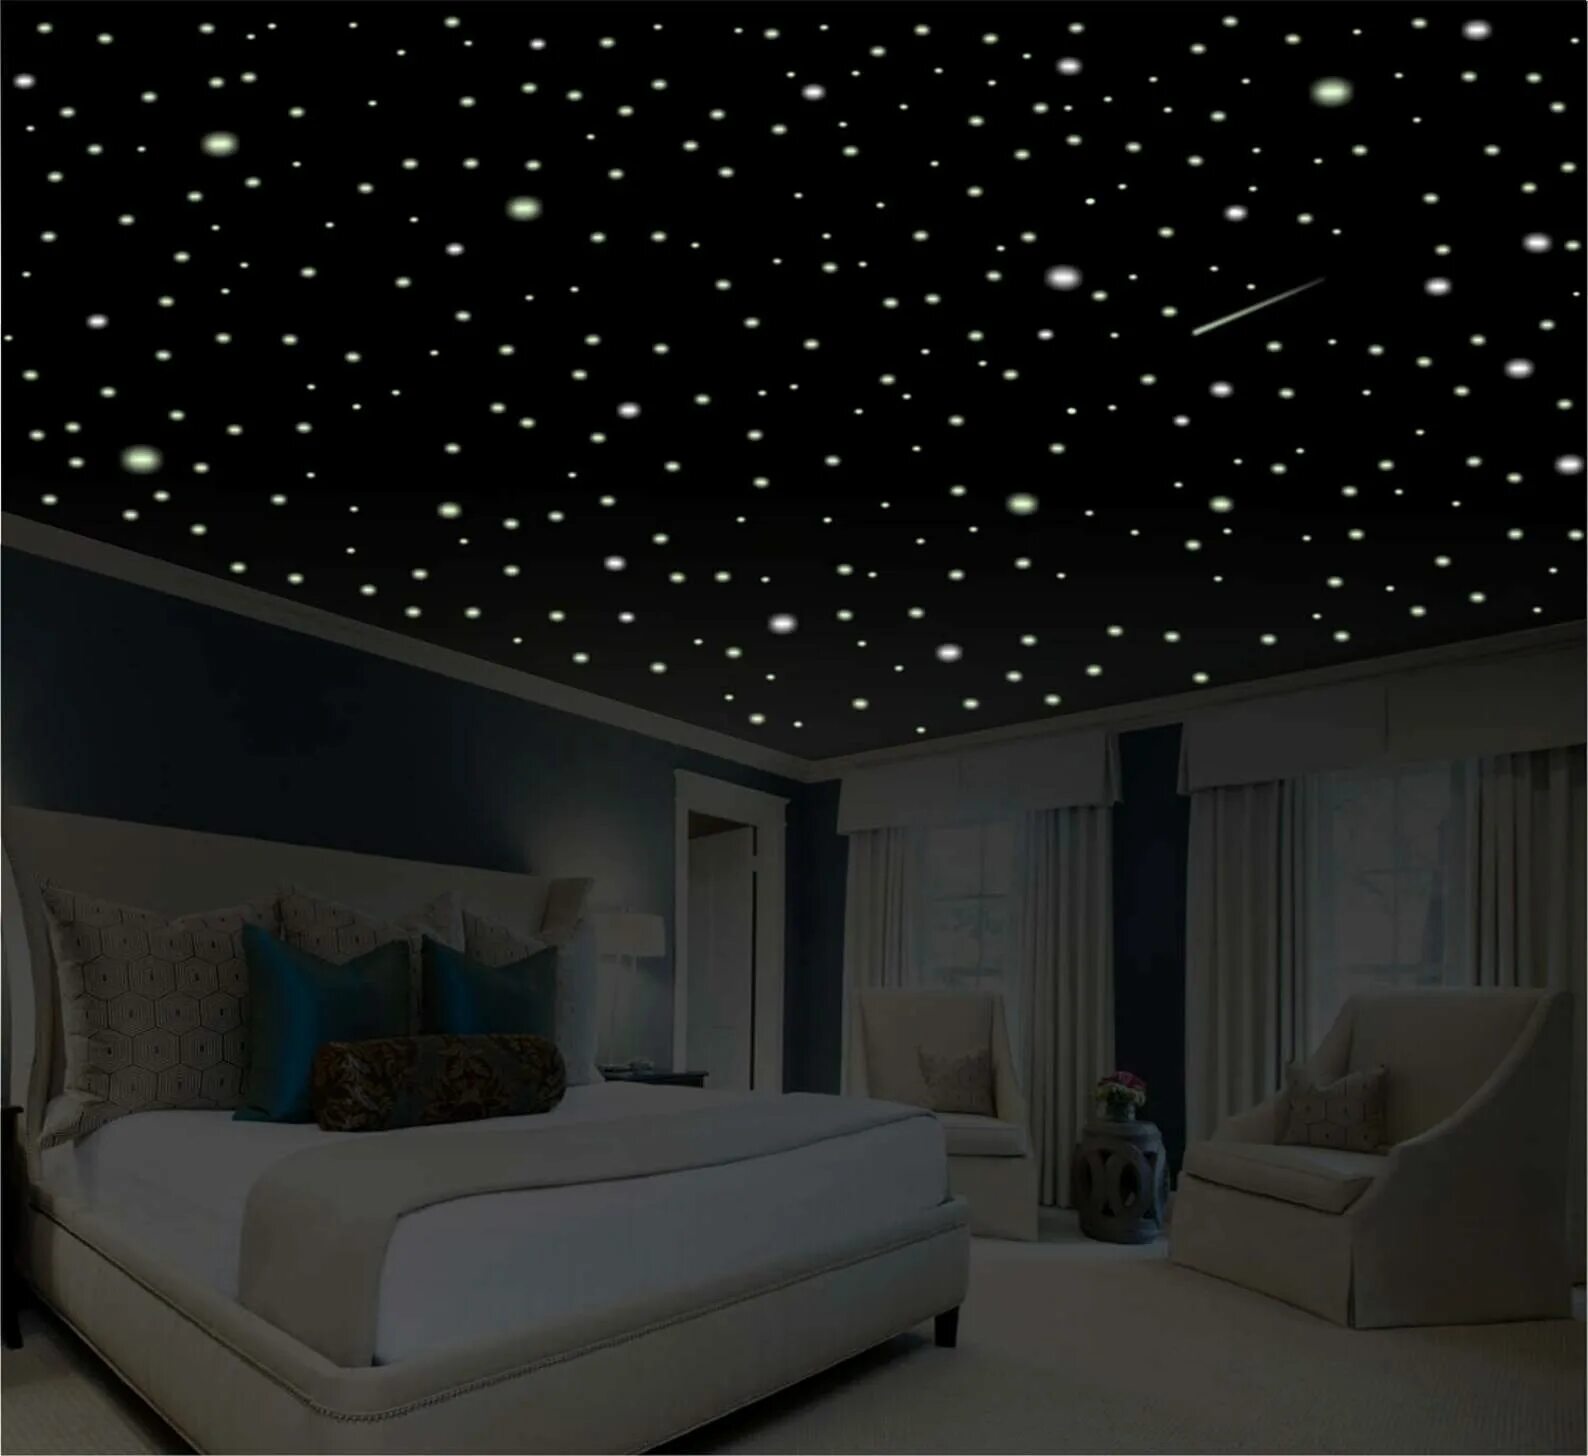 Натяжной потолок звездное небо. Звездное небо с мерцанием звезд + натяжной потолок. Потолок "звездное небо" 20 плиток. ВИПСИЛИНГ звездное небо. Звездное небо домой